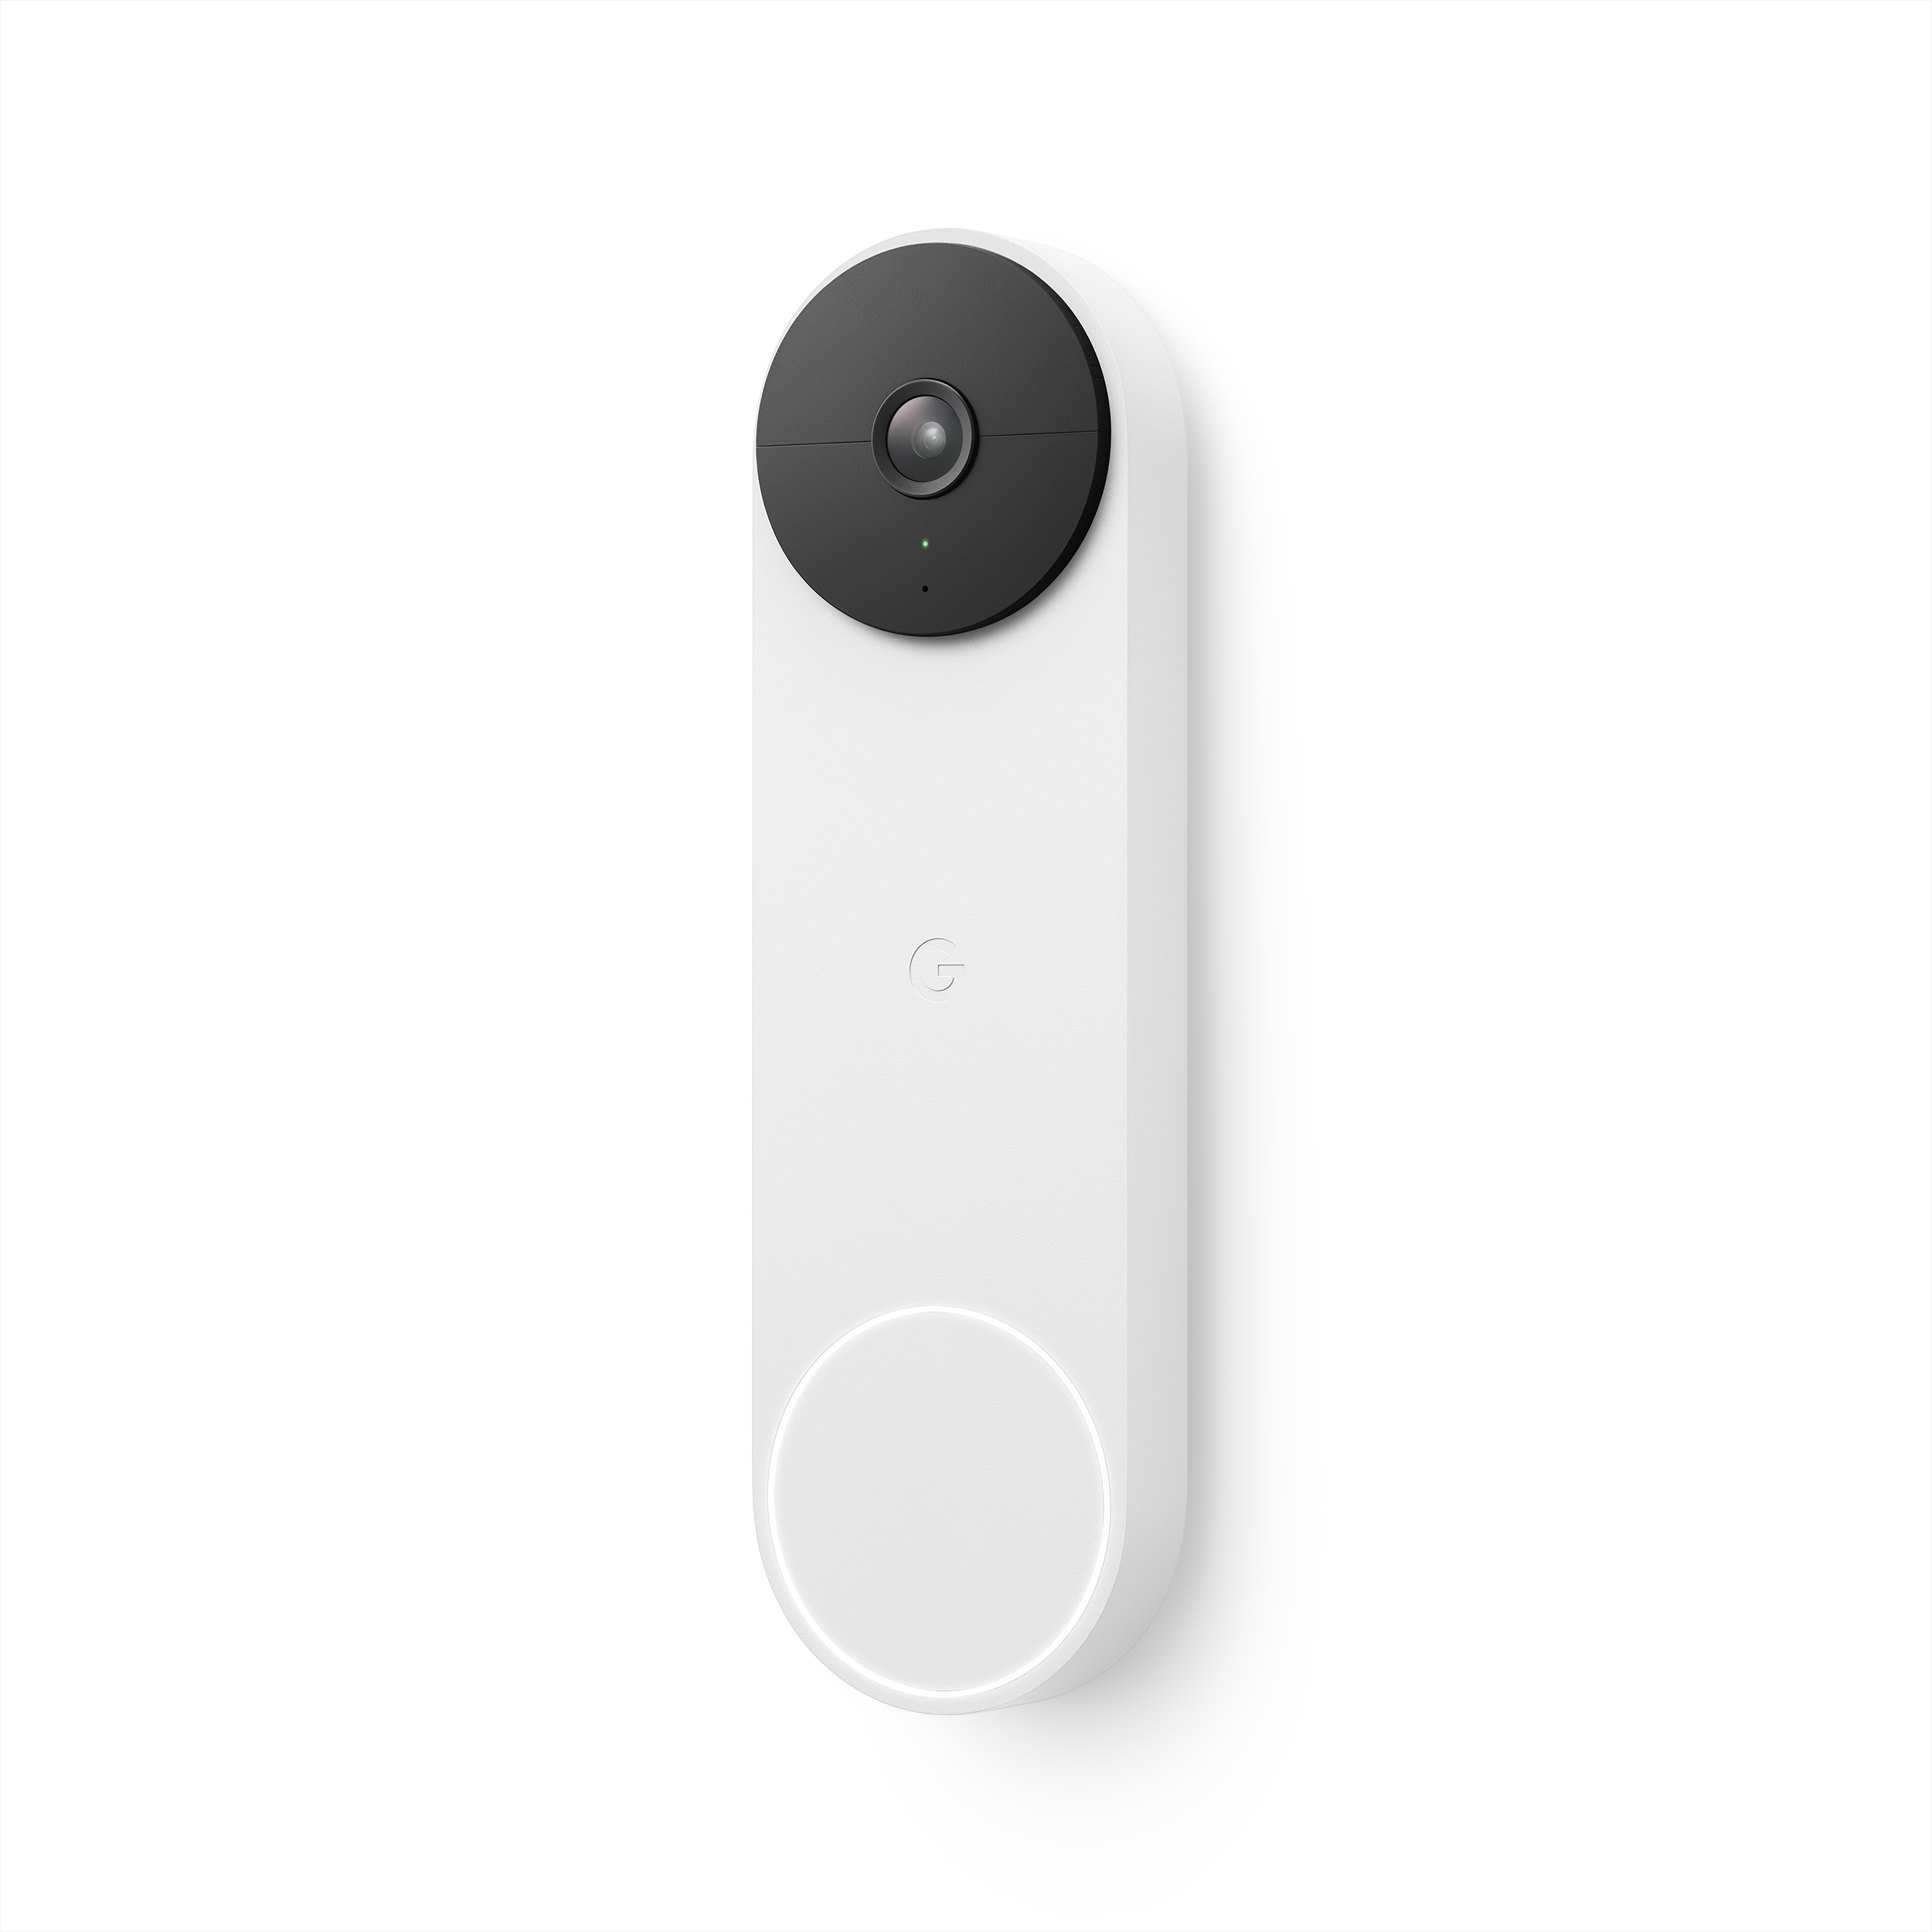 Google Nest Doorbell (Battery) - Video Doorbell Camera - Wireless Doorbell Security Camera - Snow - Walmart.com $129.99